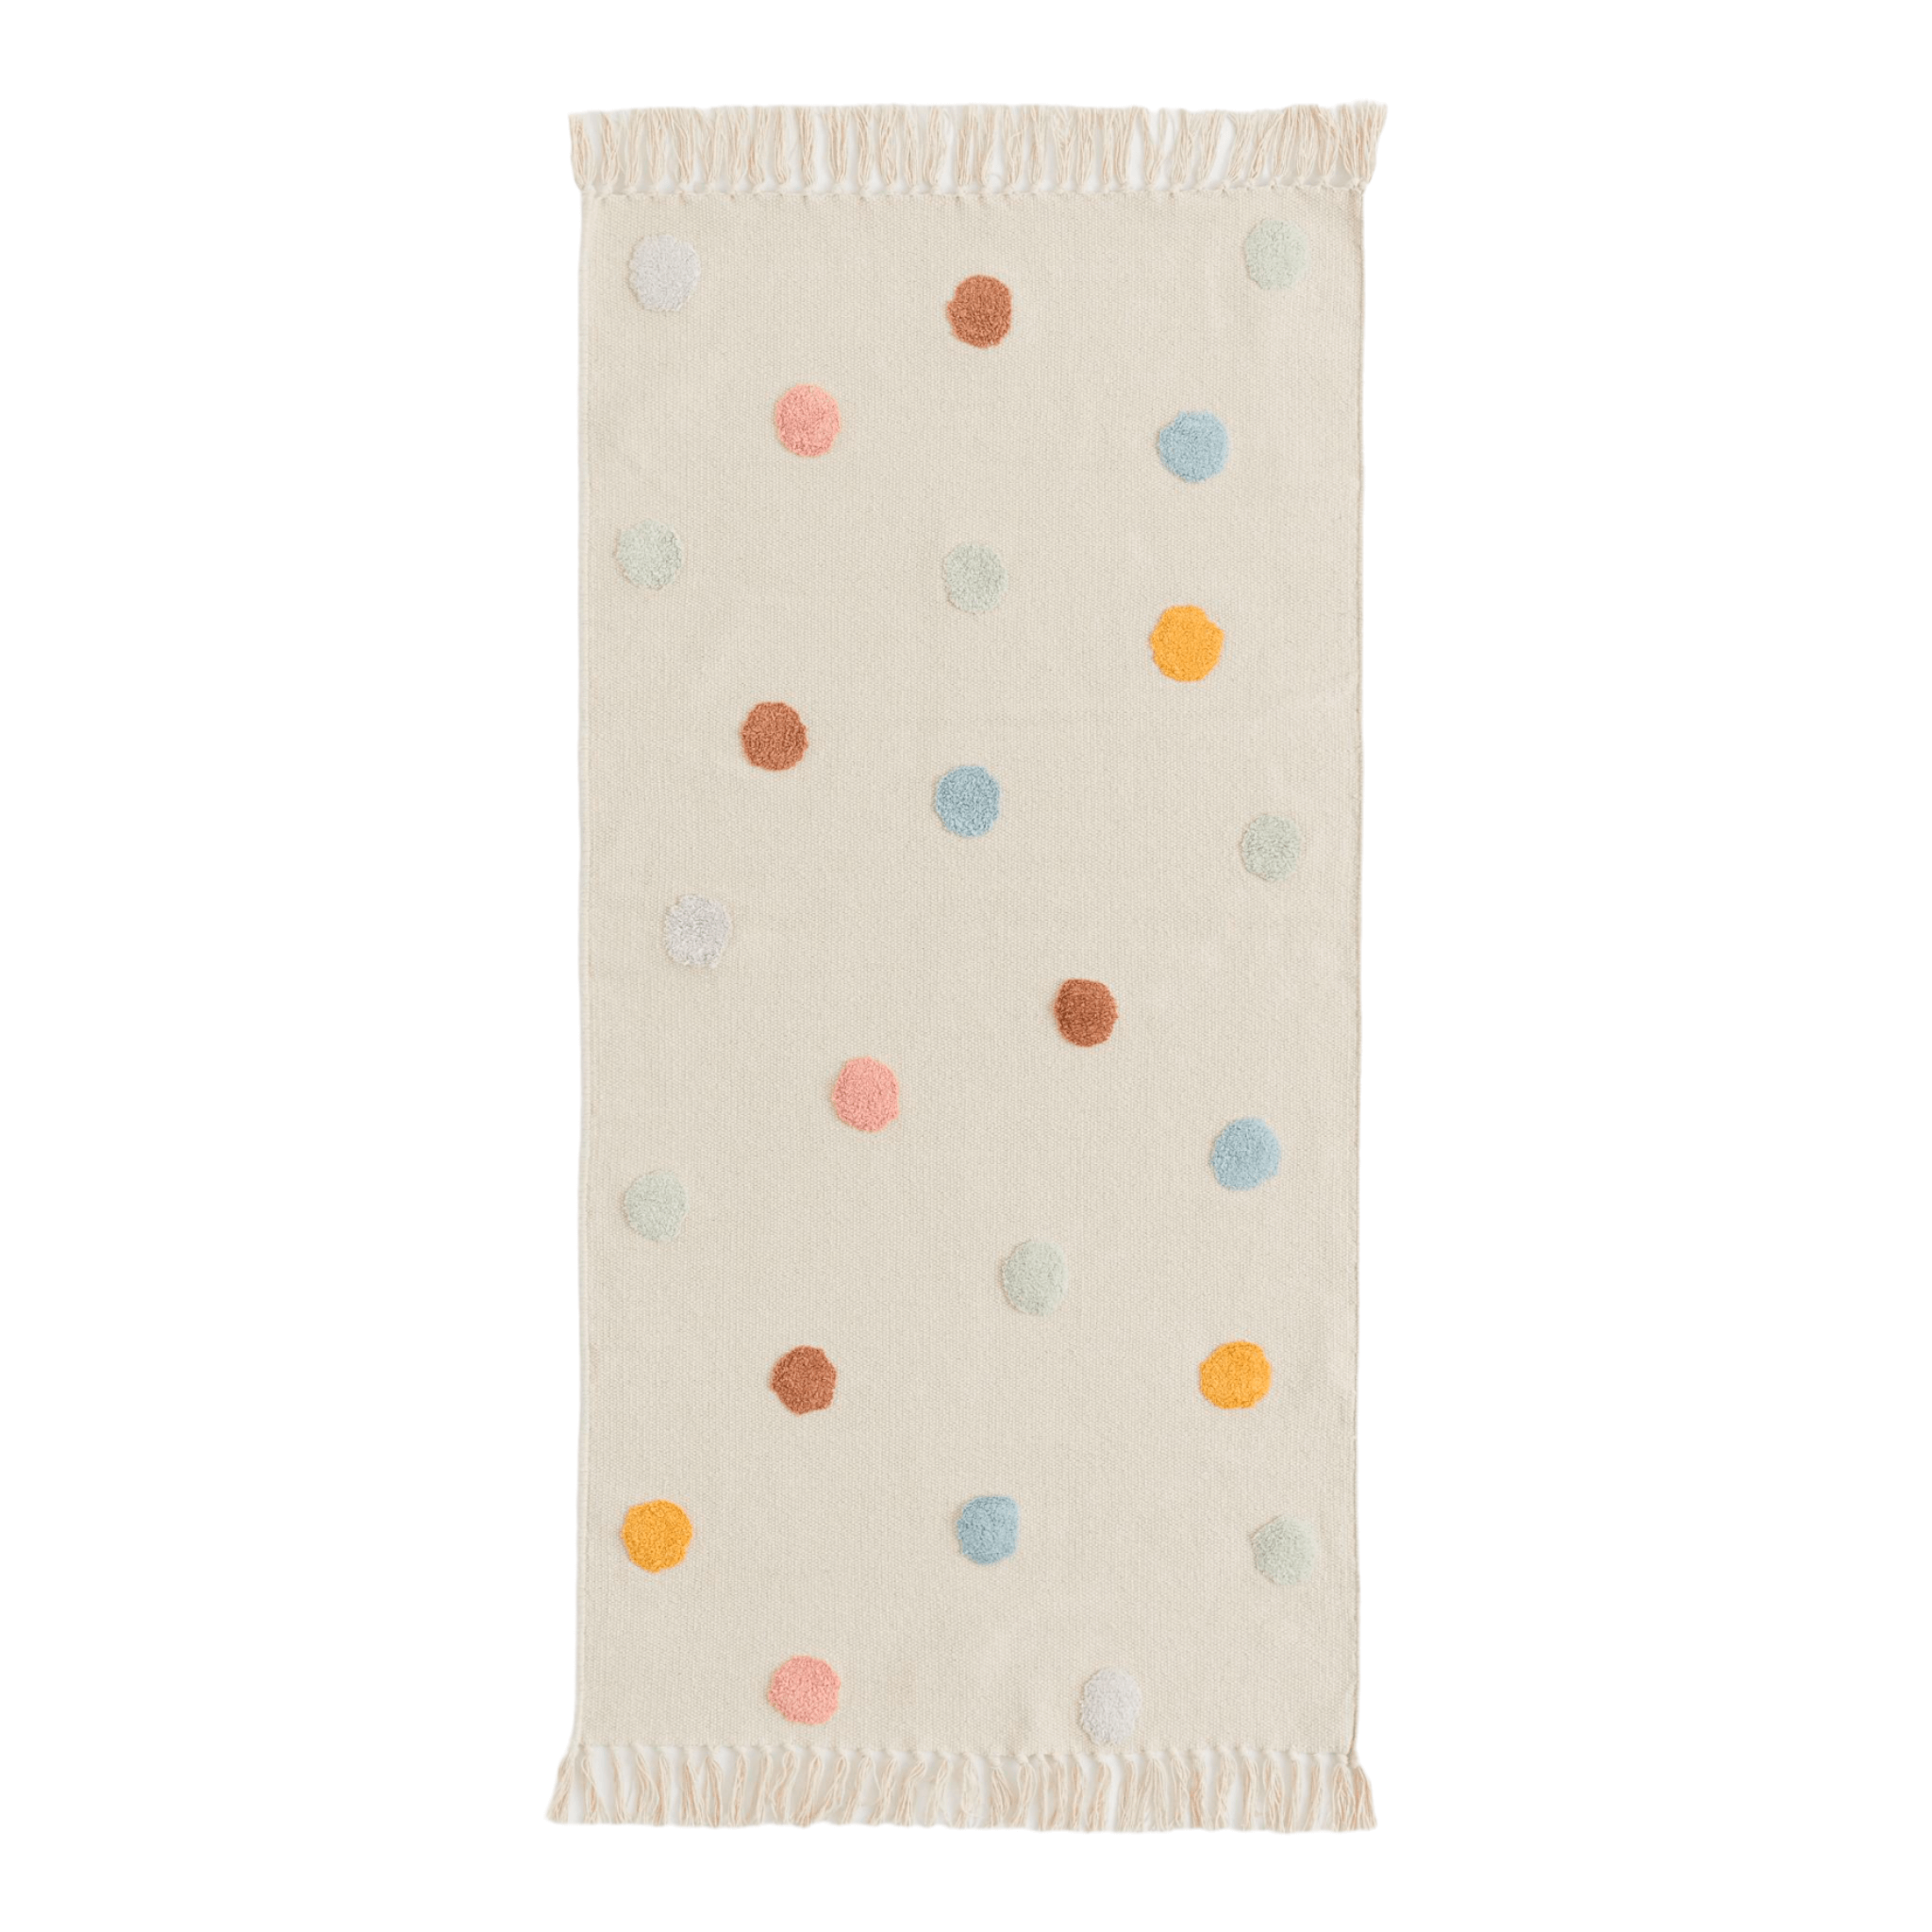 Ковер H&M Home Tufted-pattern Cotton, светло-бежевый/цветной горошек